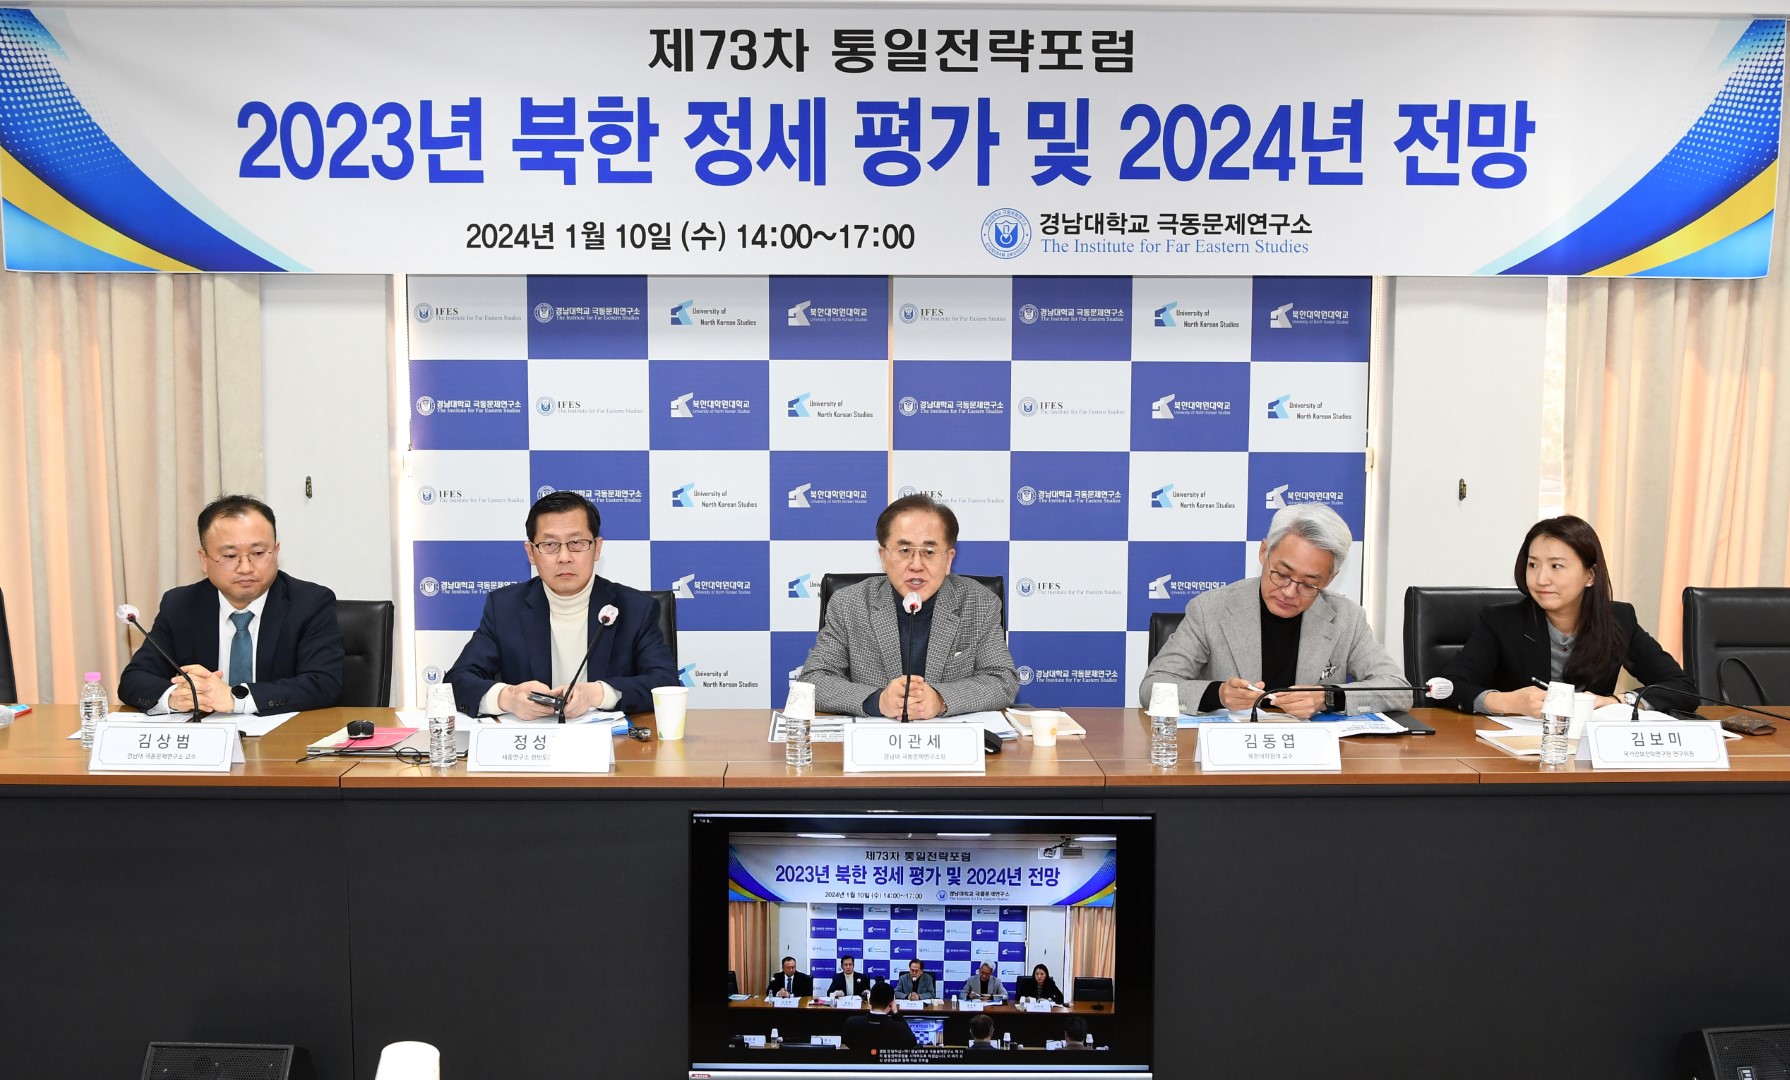 『제73차 통일전략포럼』“2023년 북한 정세평가 및 2024년 전망” 개최 첨부 이미지